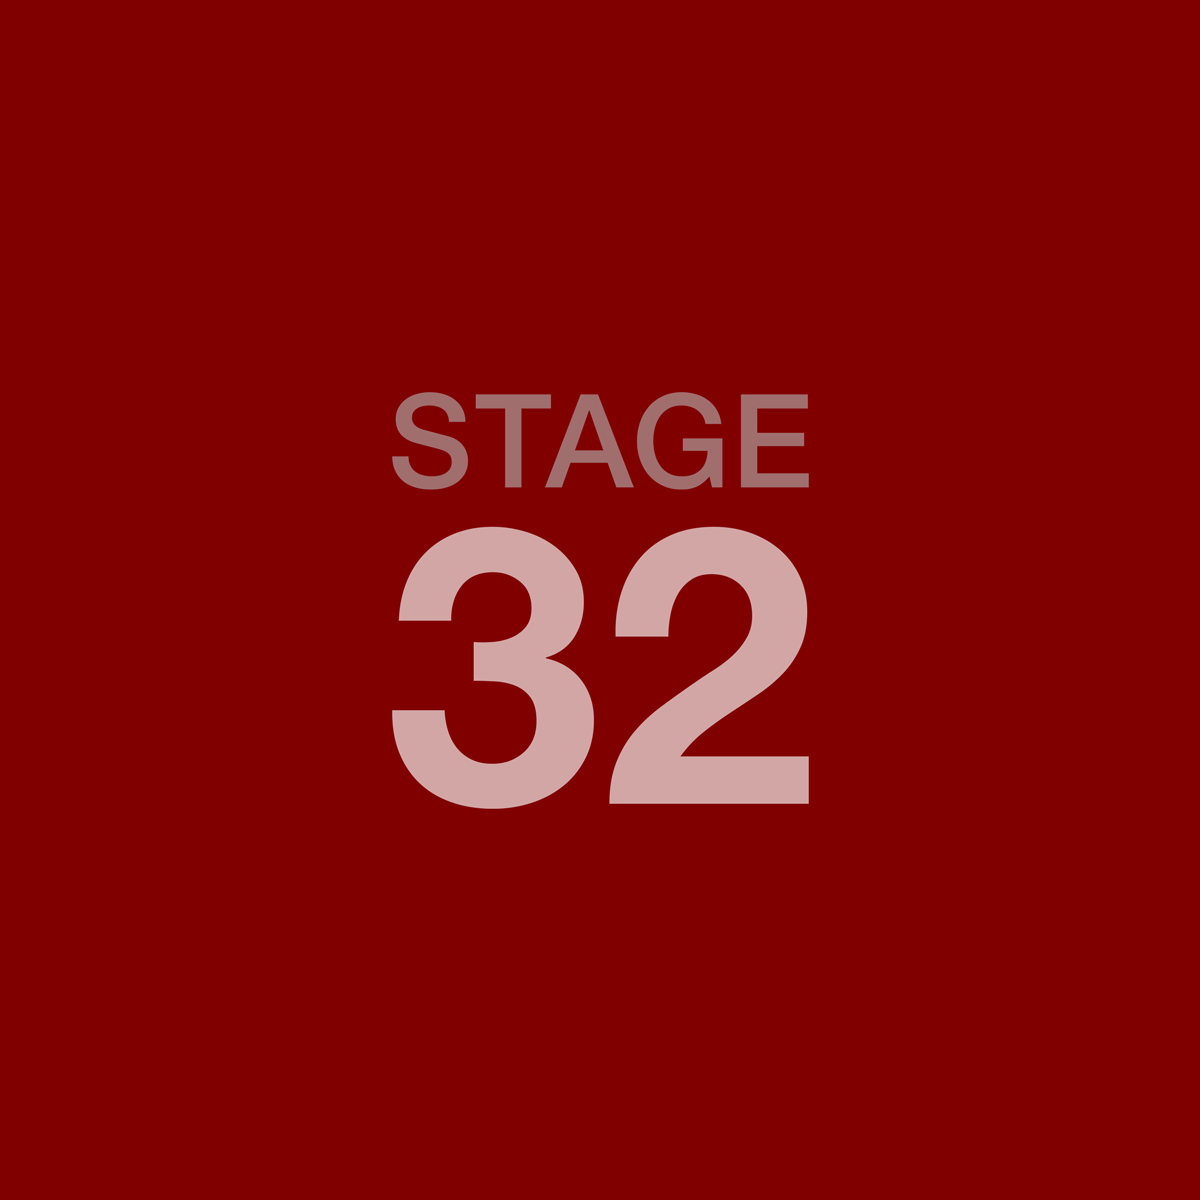 www.stage32.com